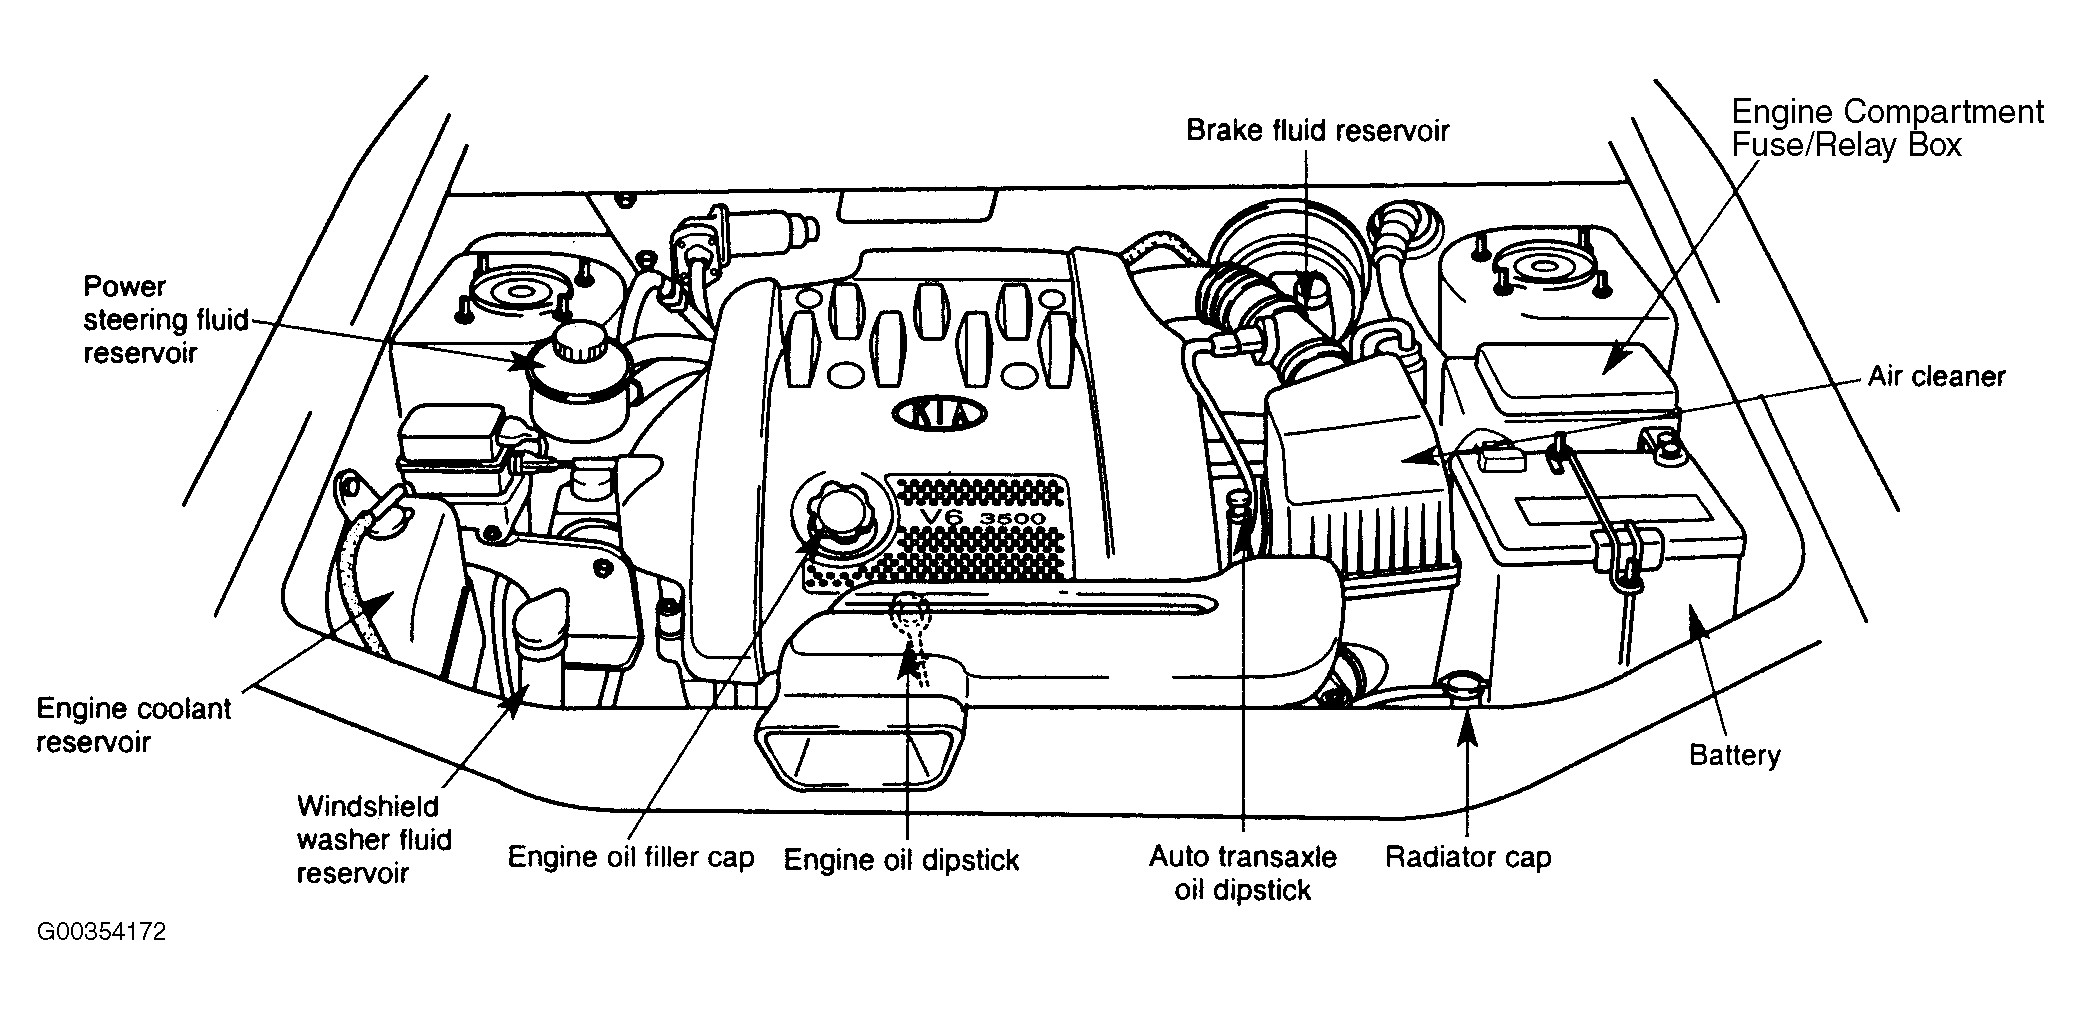 2004 Kia Amanti Engine Diagram Kia Amanti Problems Stunning Fuse Box Wiring Kia Spectra Main Fuse